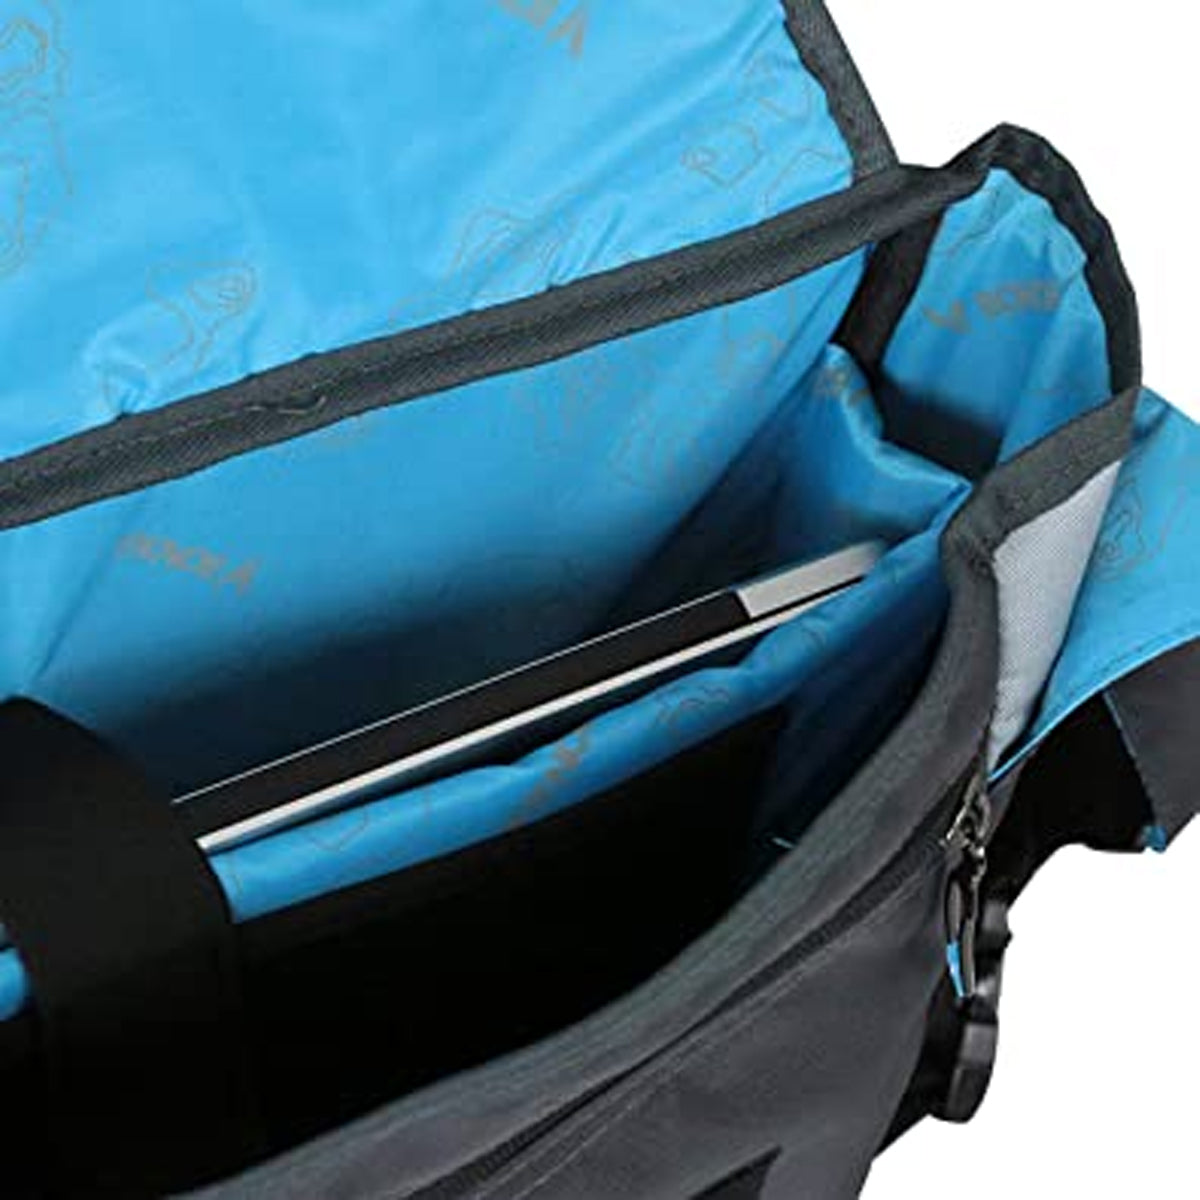 Bondka Large Messenger Bag – For 15” Laptop, Water Bottles & More